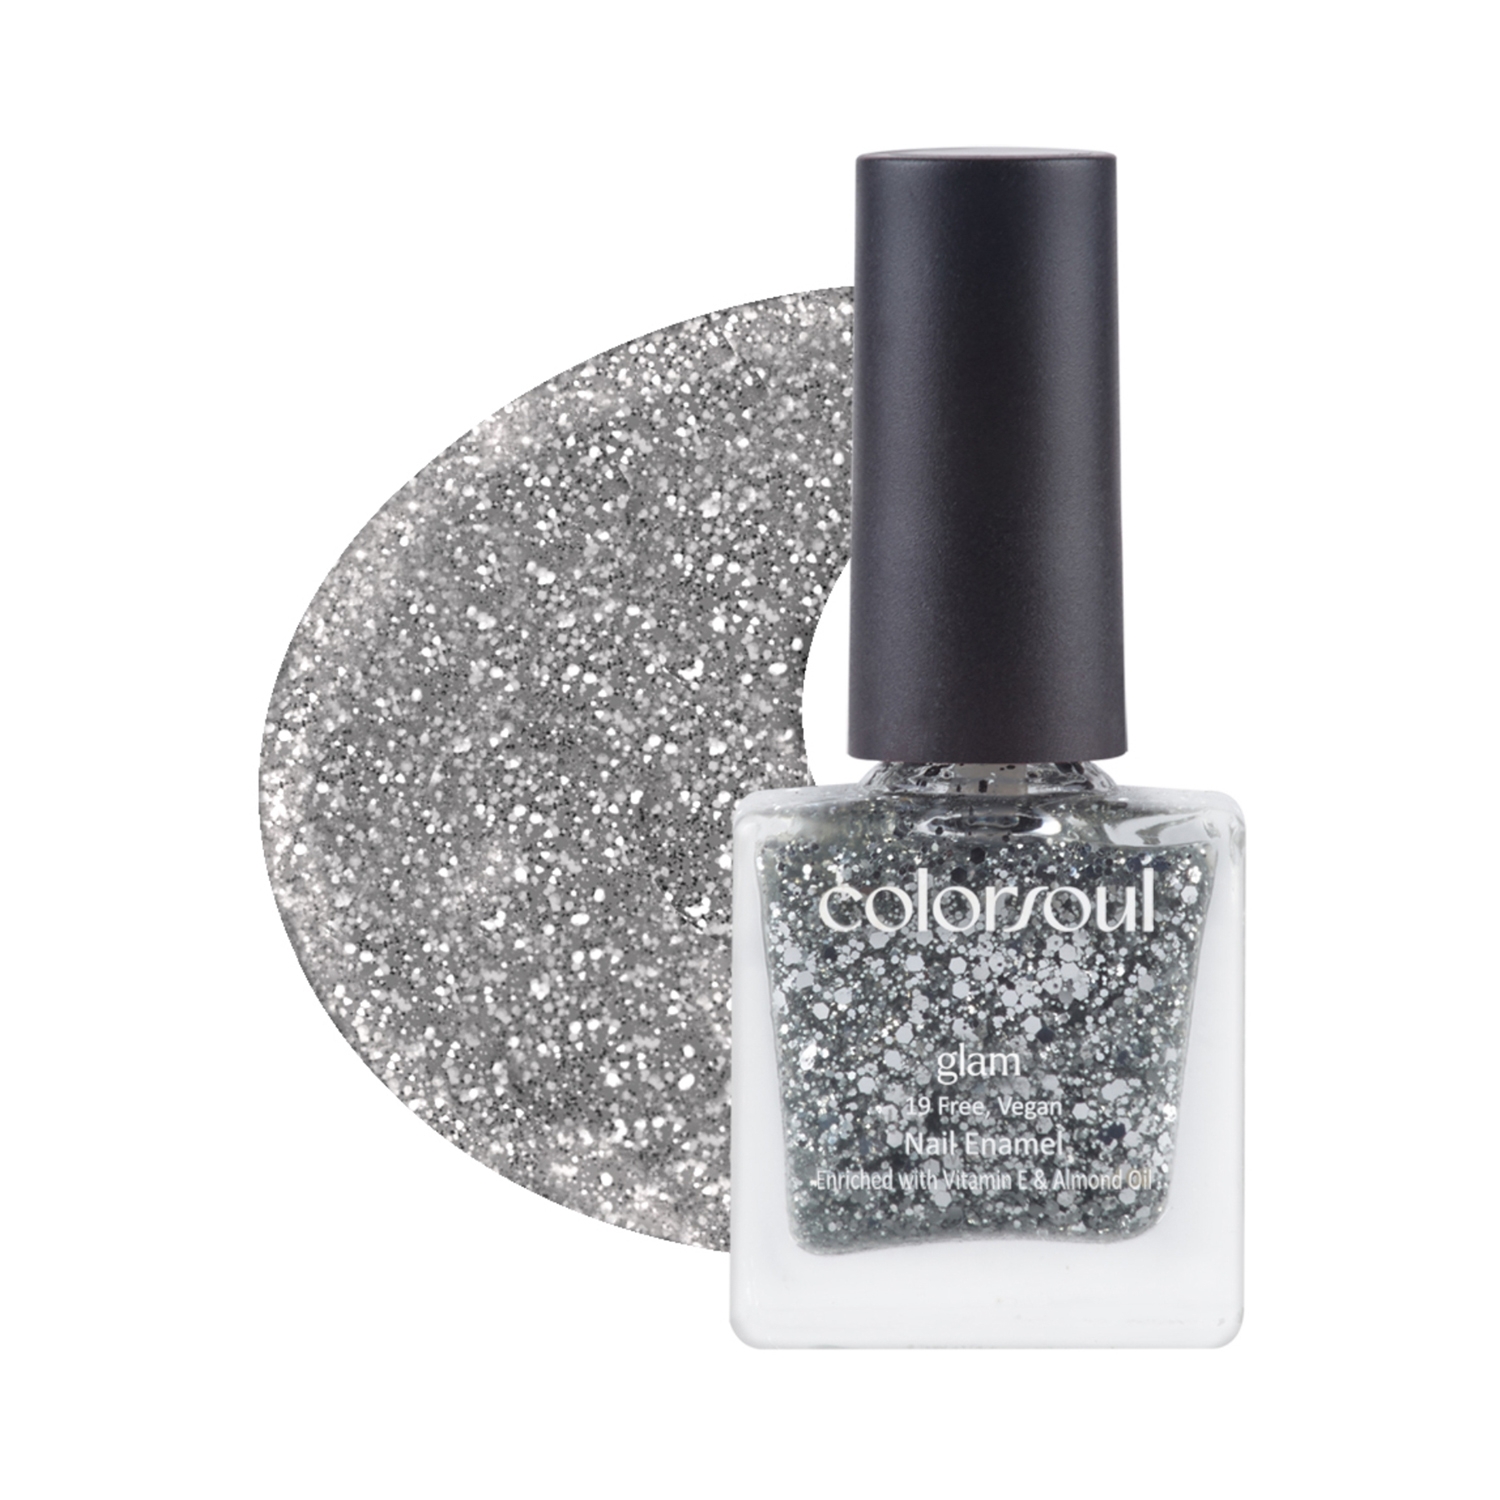 Colorsoul Glam Nail Enamel - G10 Silver Sparkle (8ml)